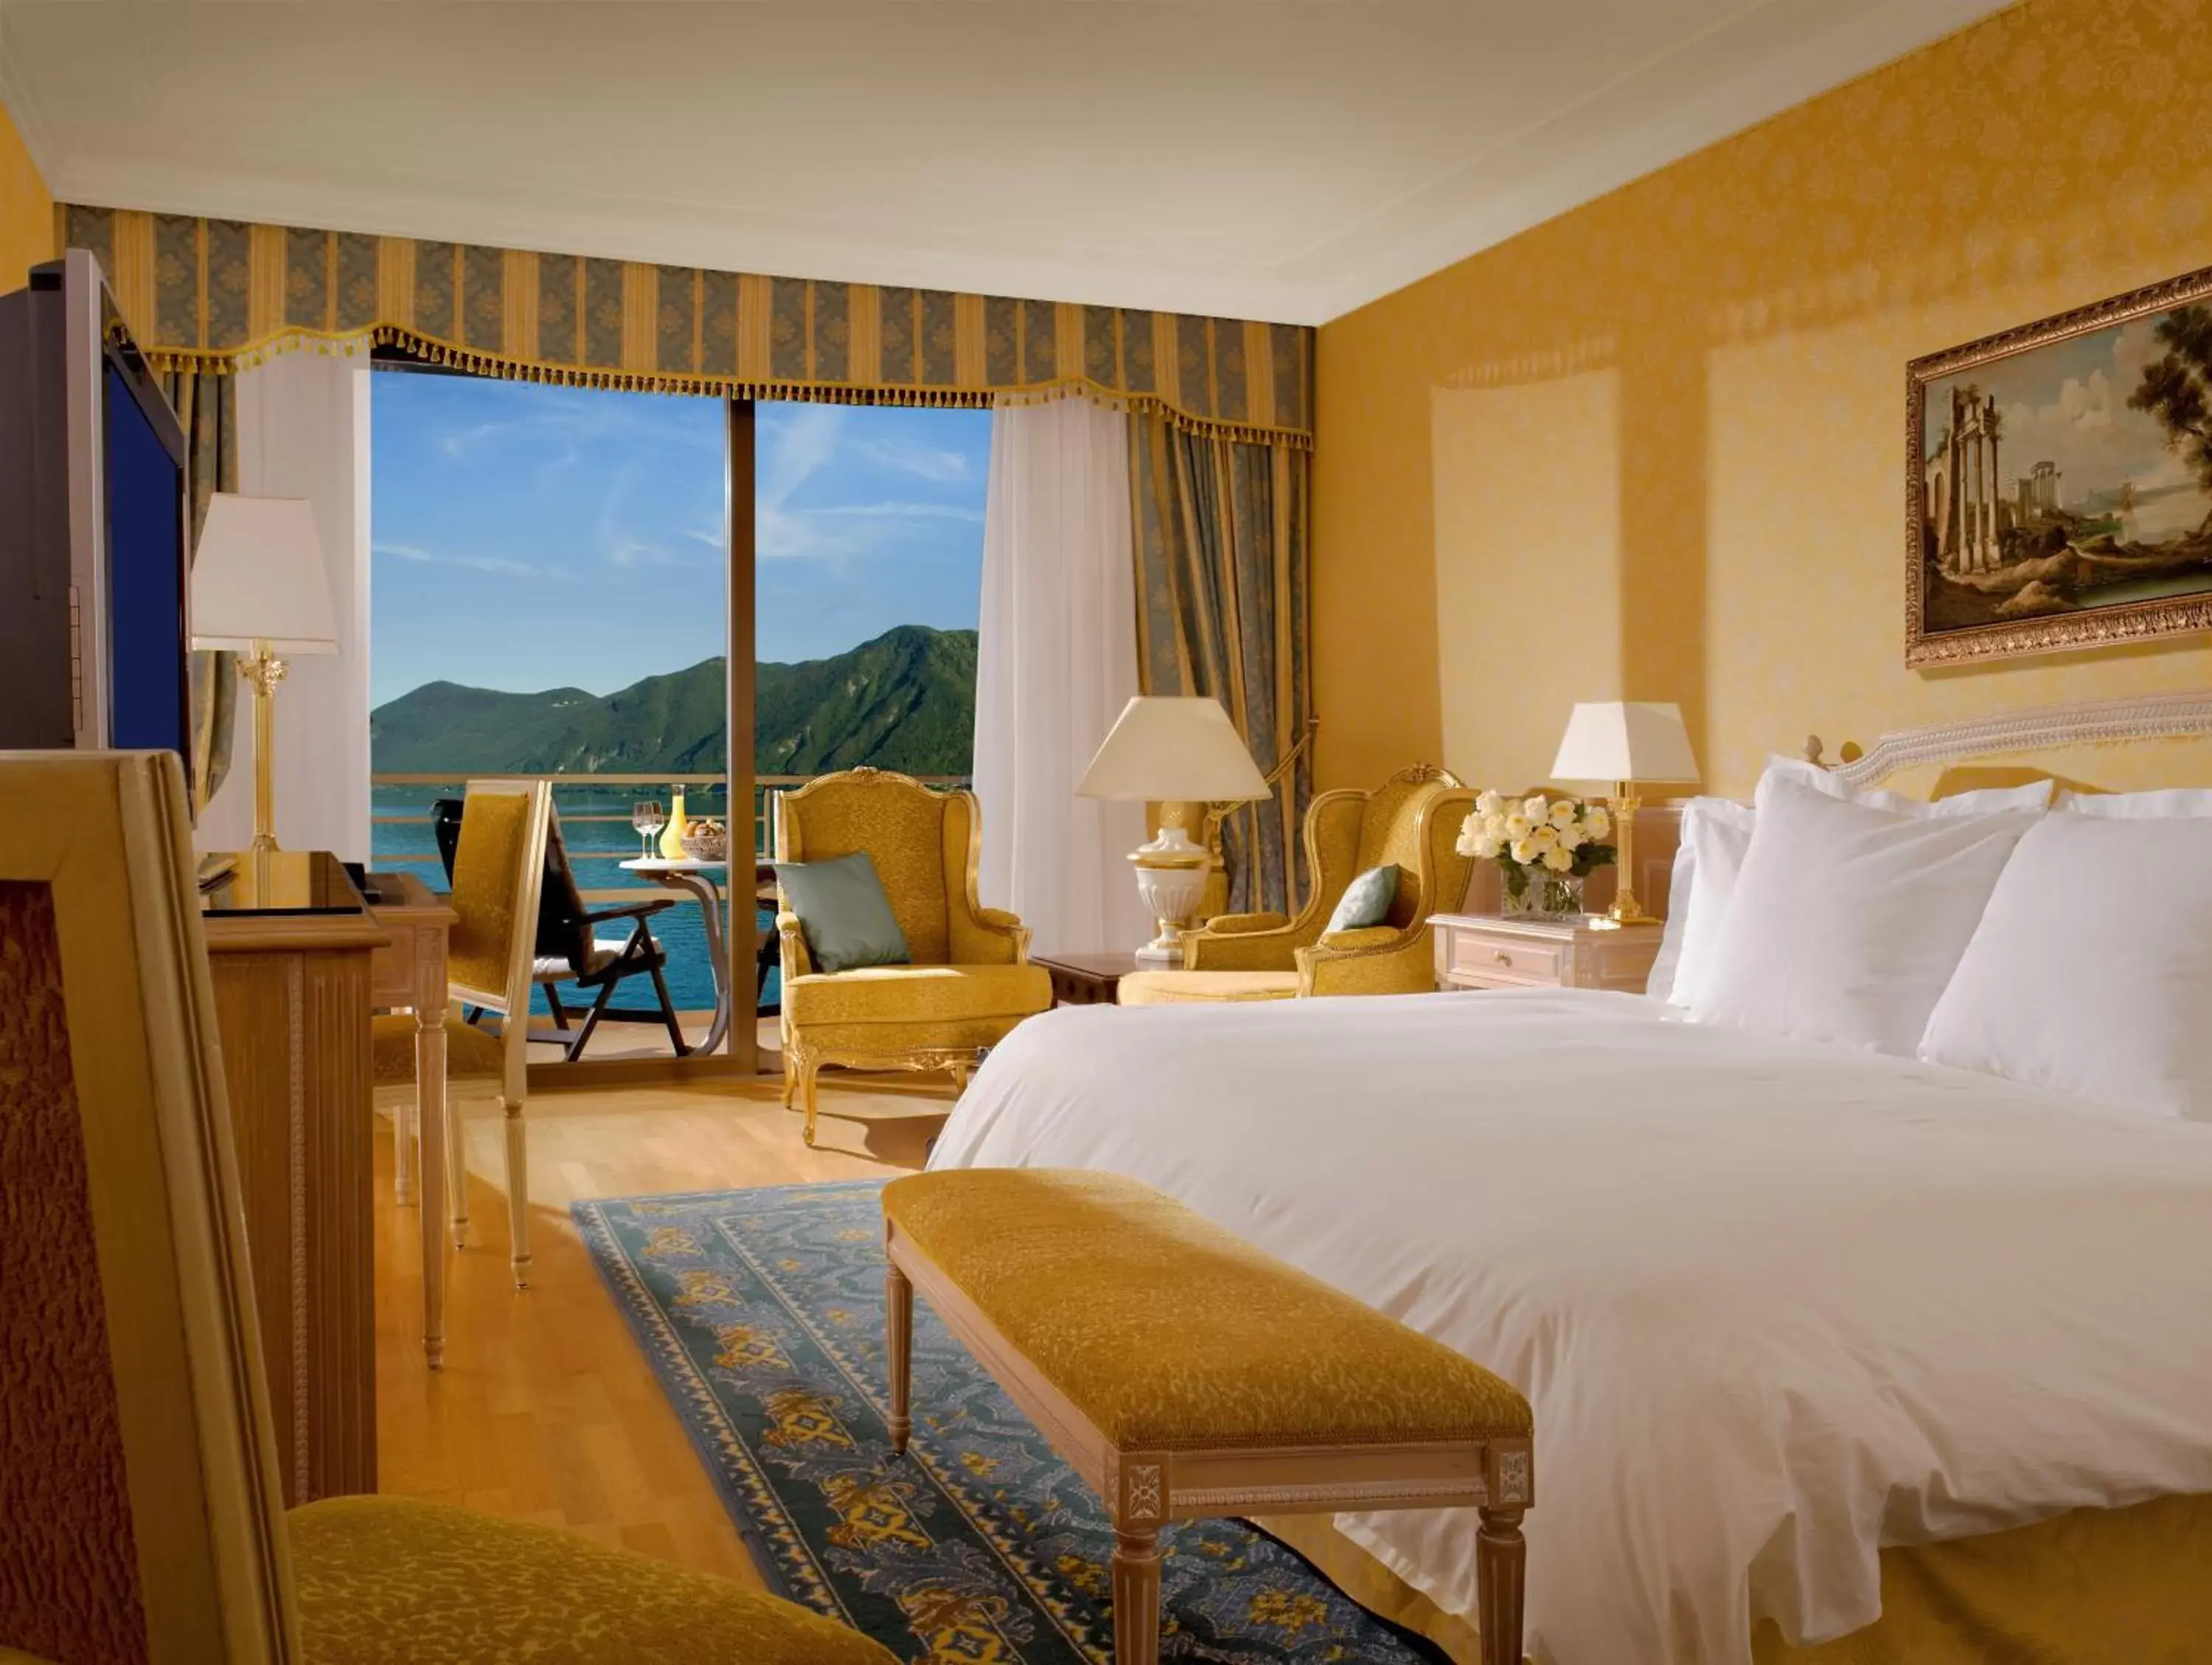 Balcony/Terrace, Mountain View in Hotel Splendide Royal